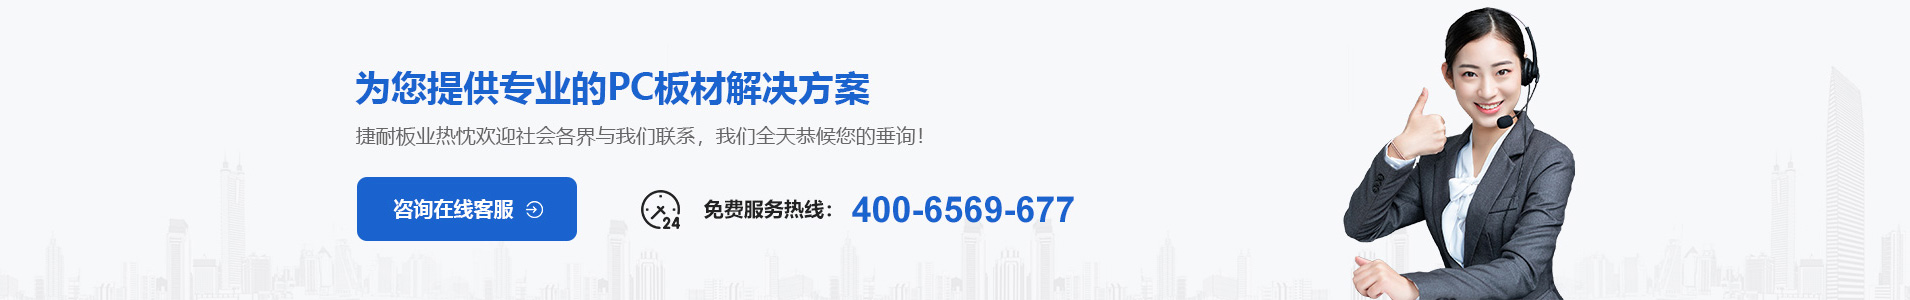 上海捷耐板业有限公司